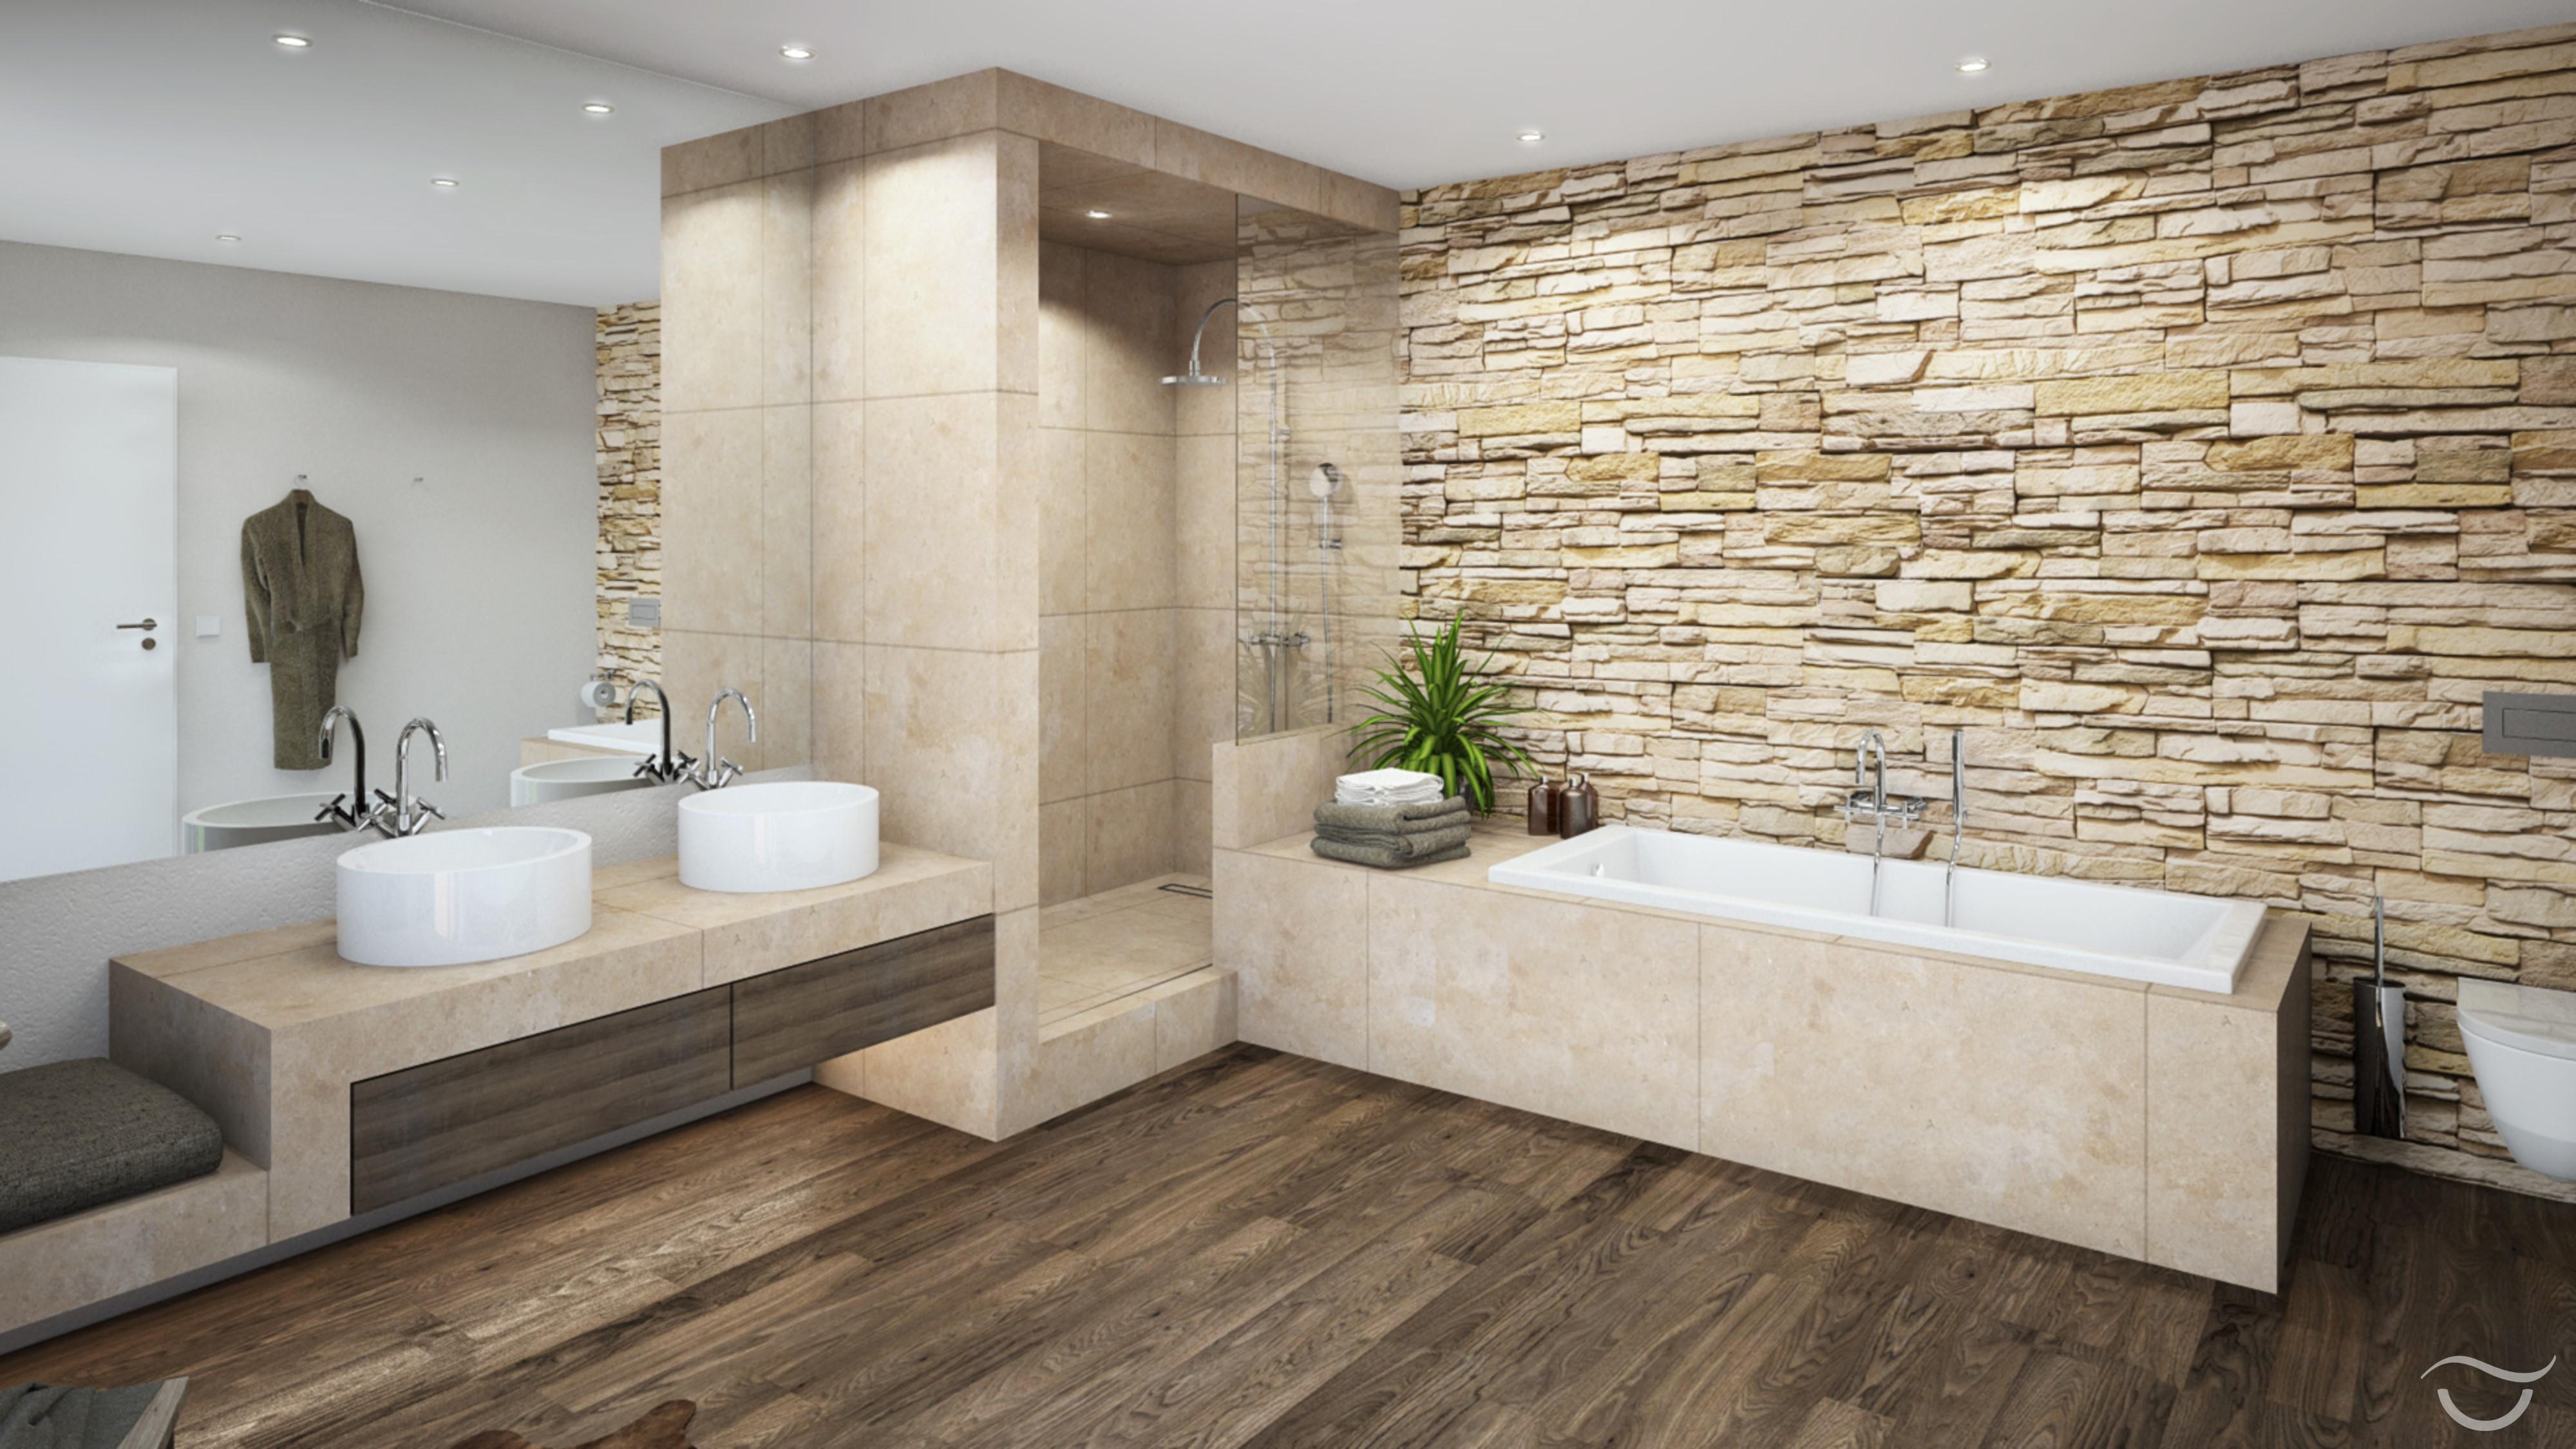 Holzboden im RUSTICO-Design #waschbecken #steinwand #rustikal #aufsatzwaschbecken #einbaudusche ©Banovo GmbH